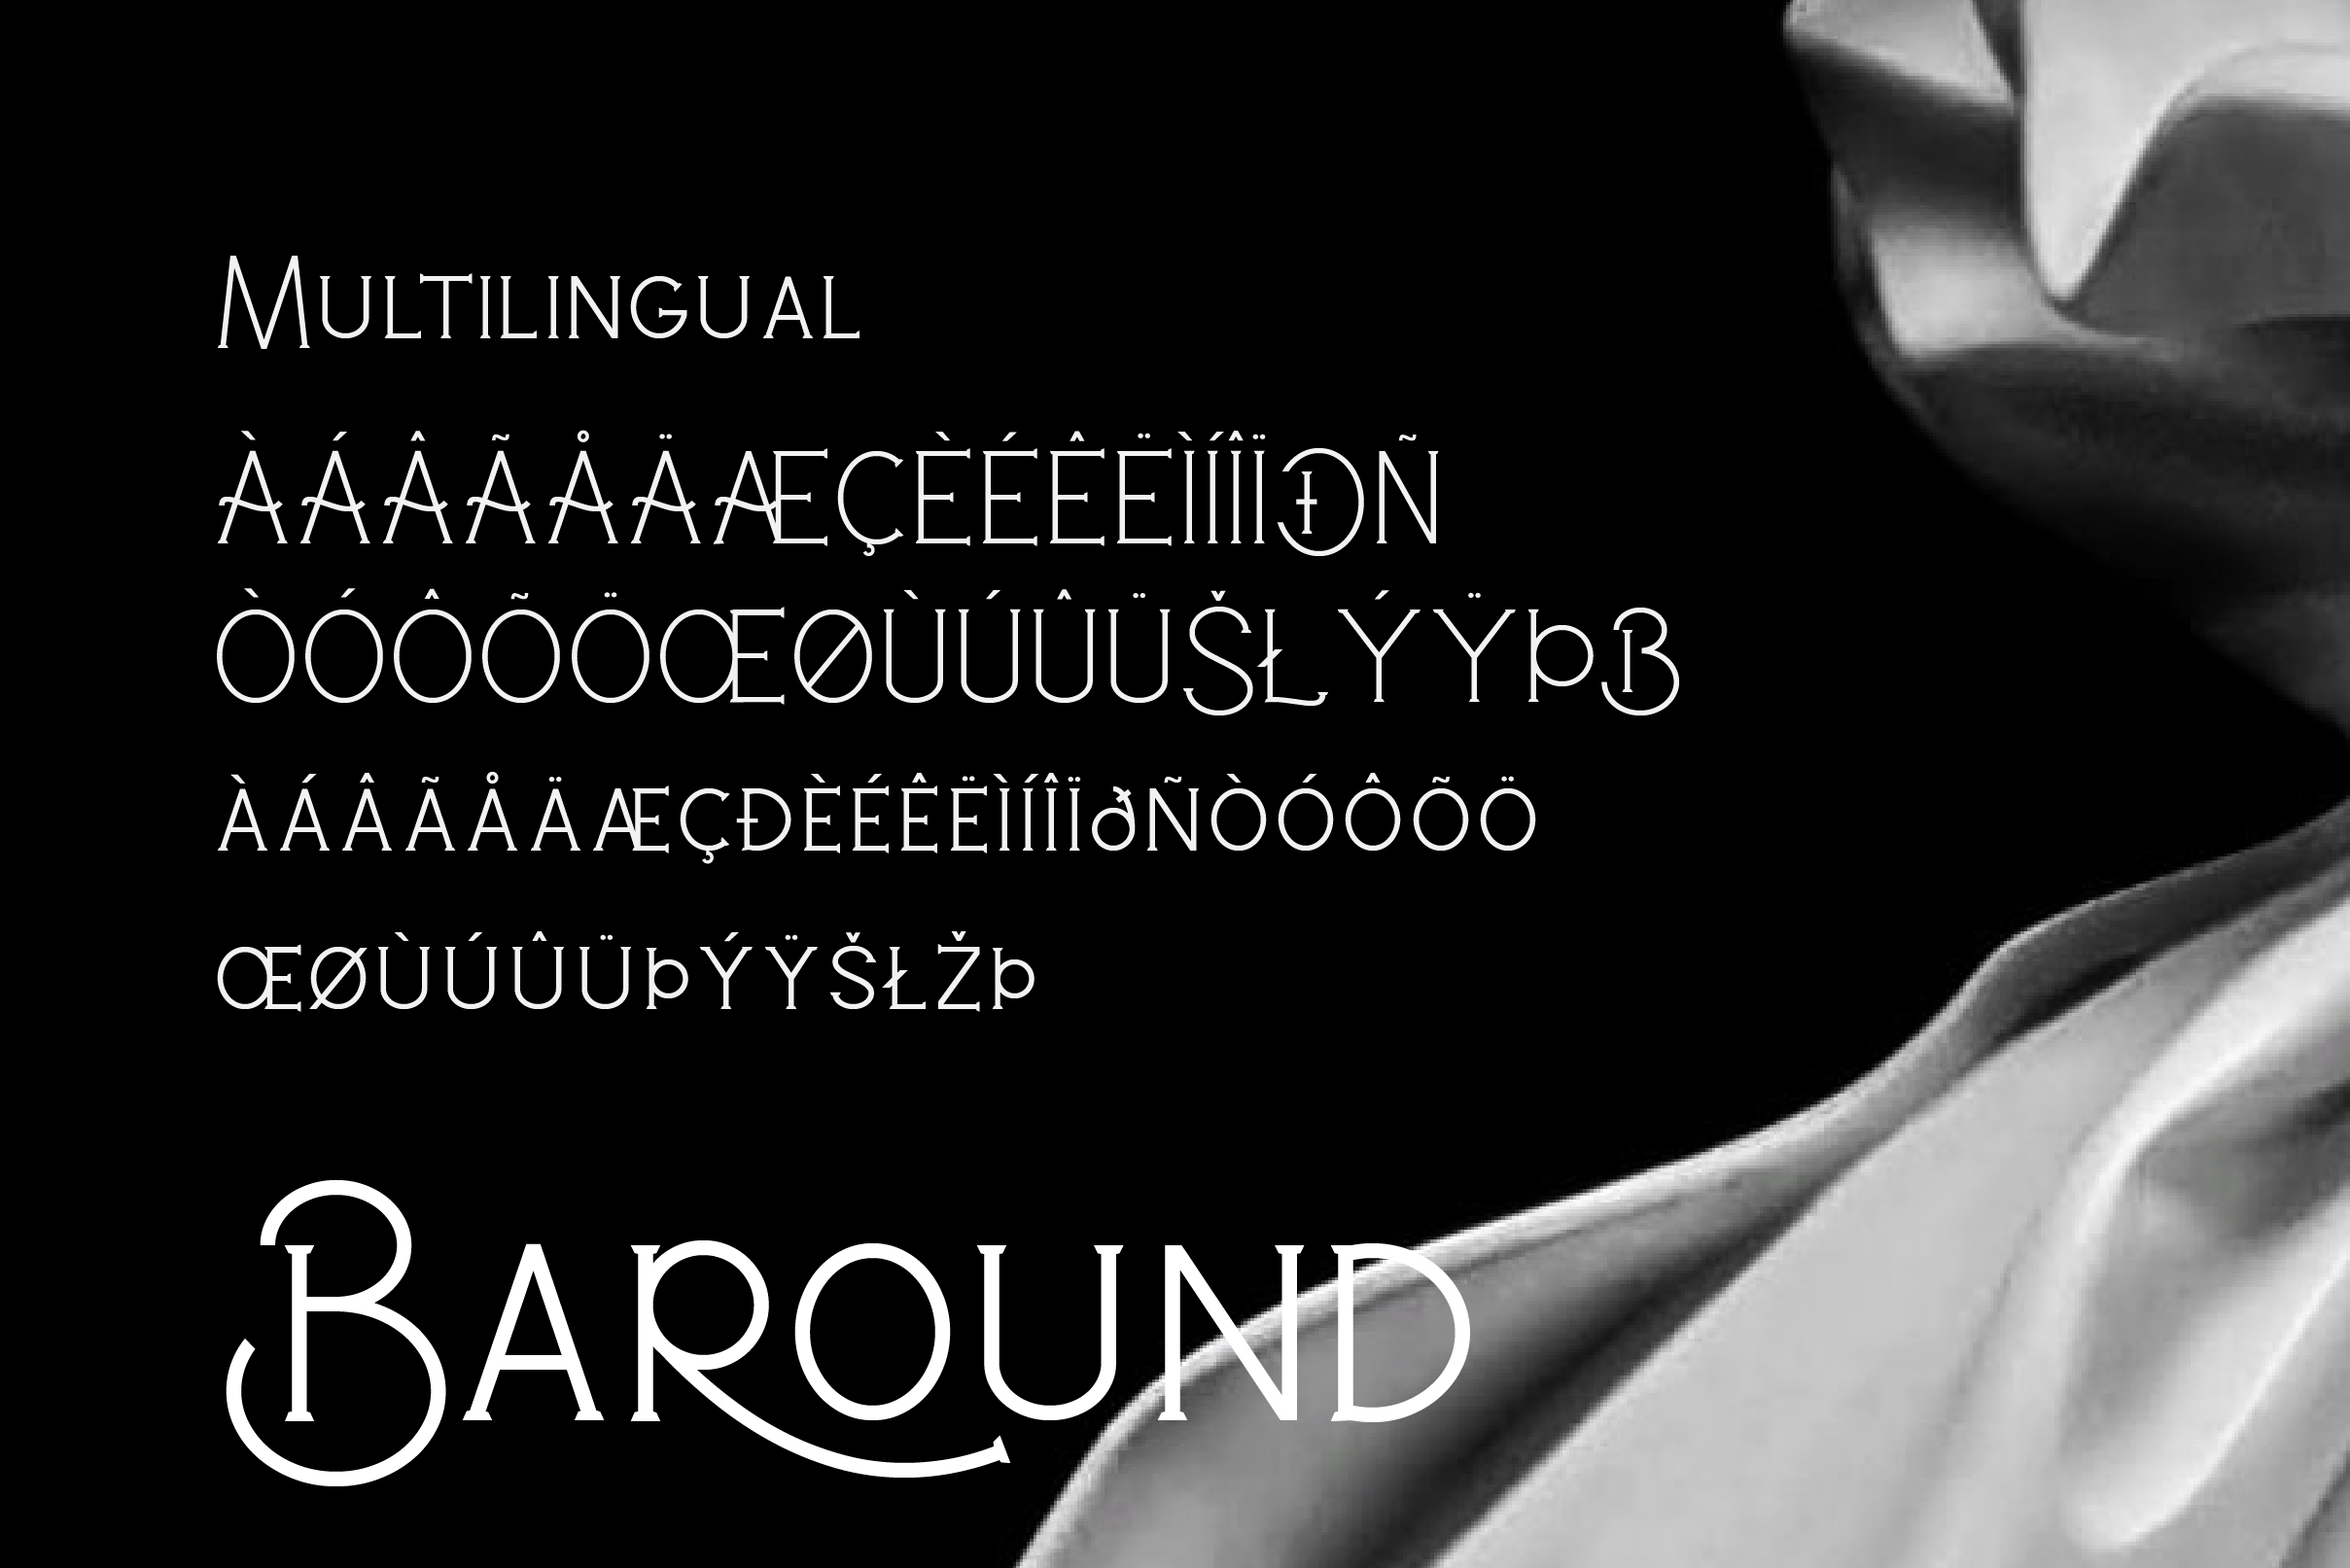 Baround